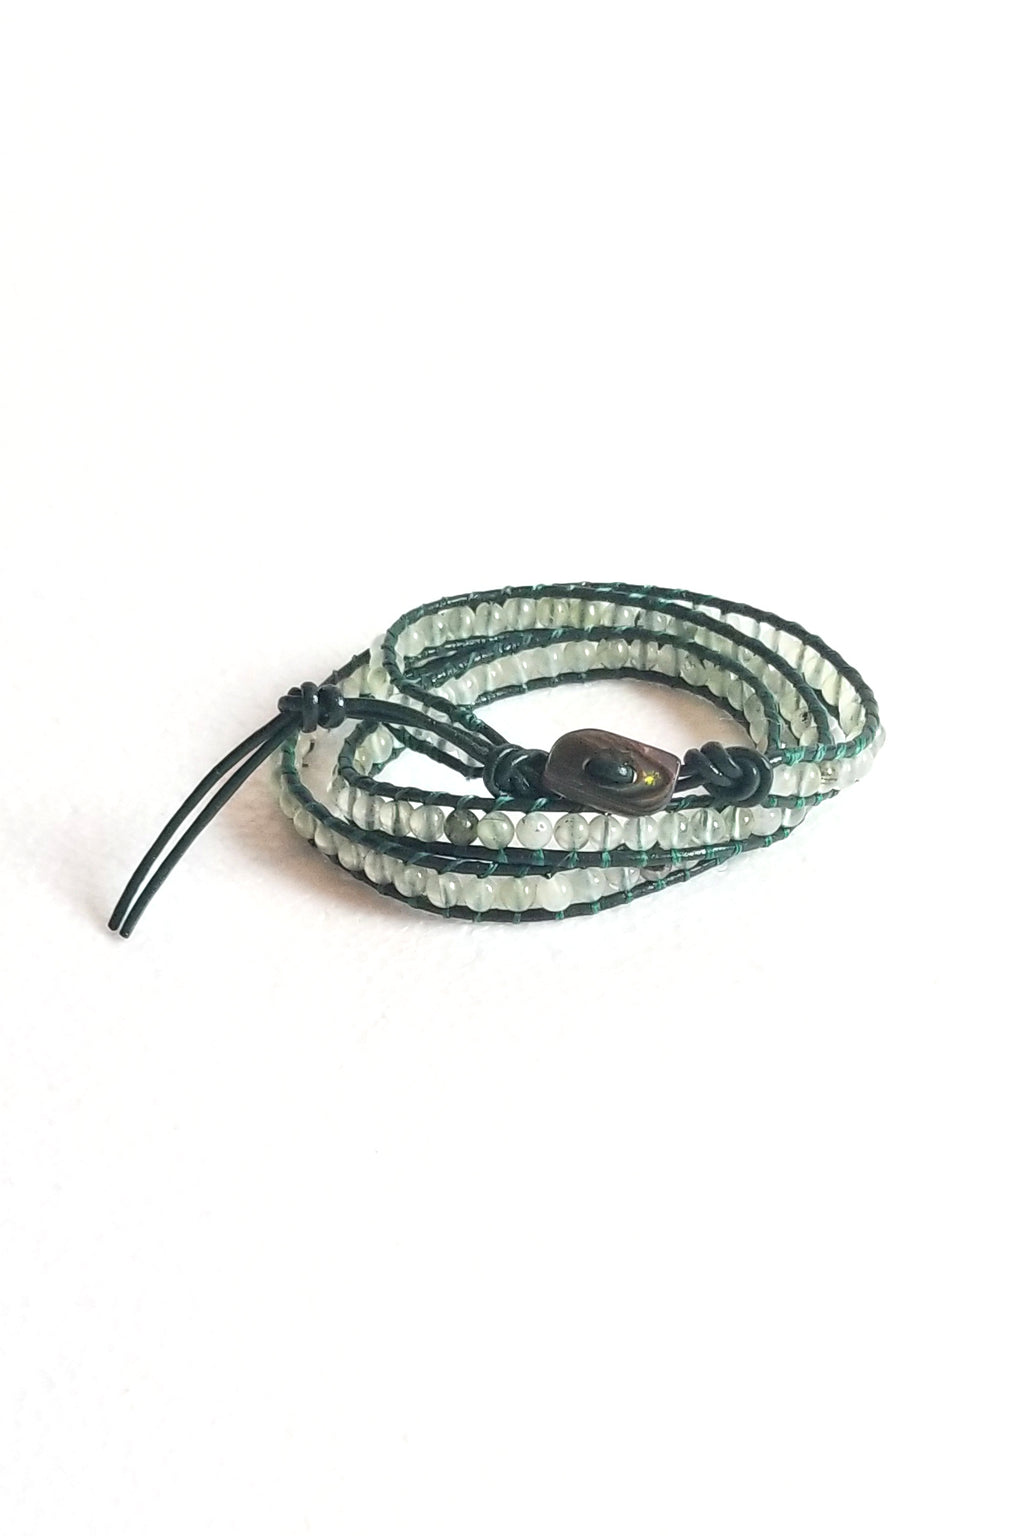 Burma Jade 3-wrap bracelet #48